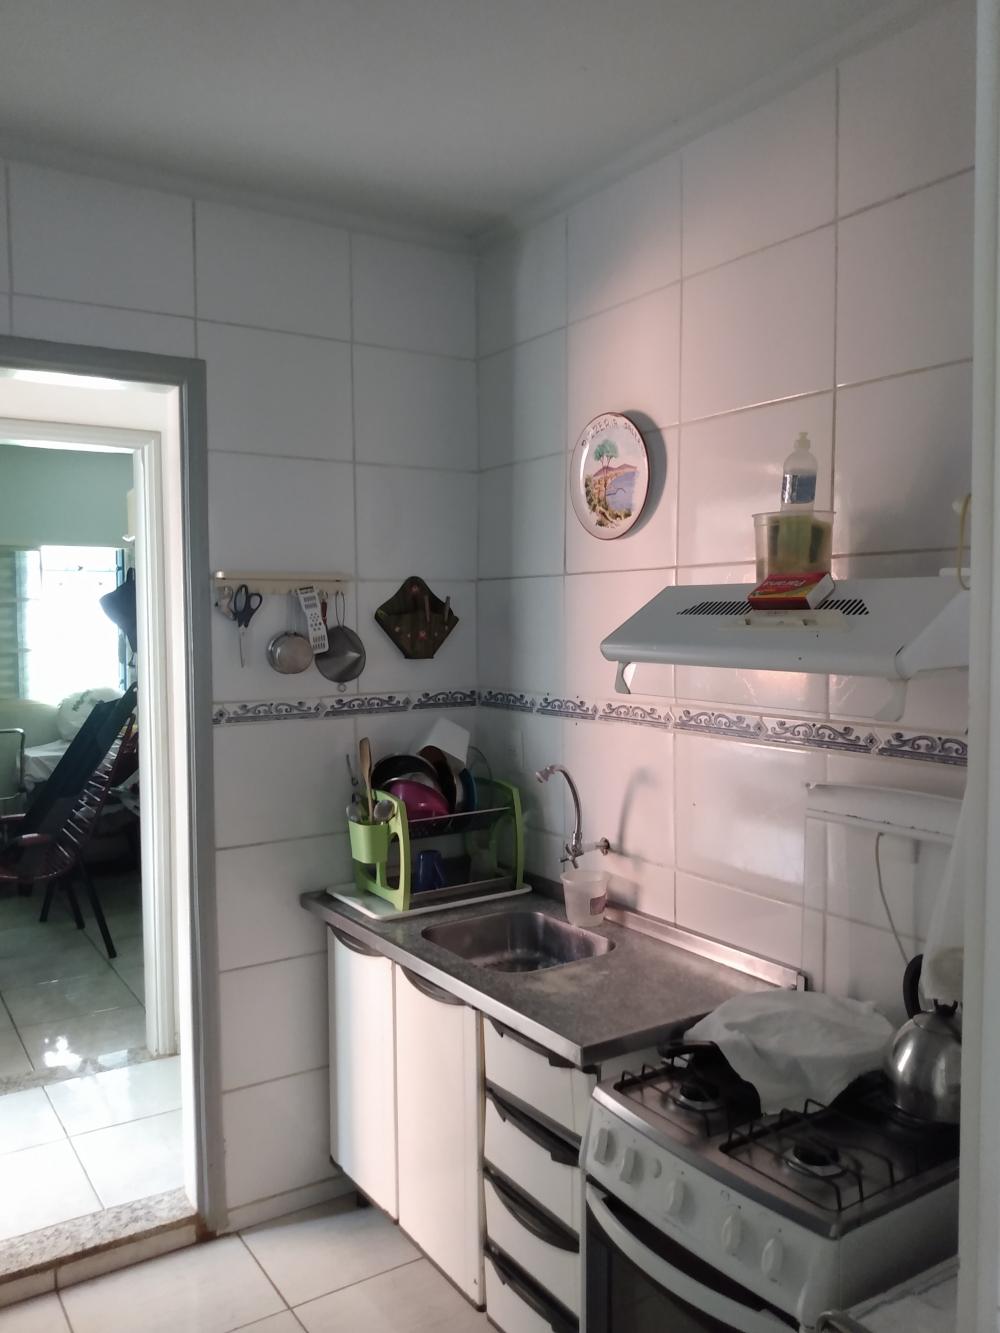 Alugar Casa / Padrão em São José do Rio Preto R$ 850,00 - Foto 2